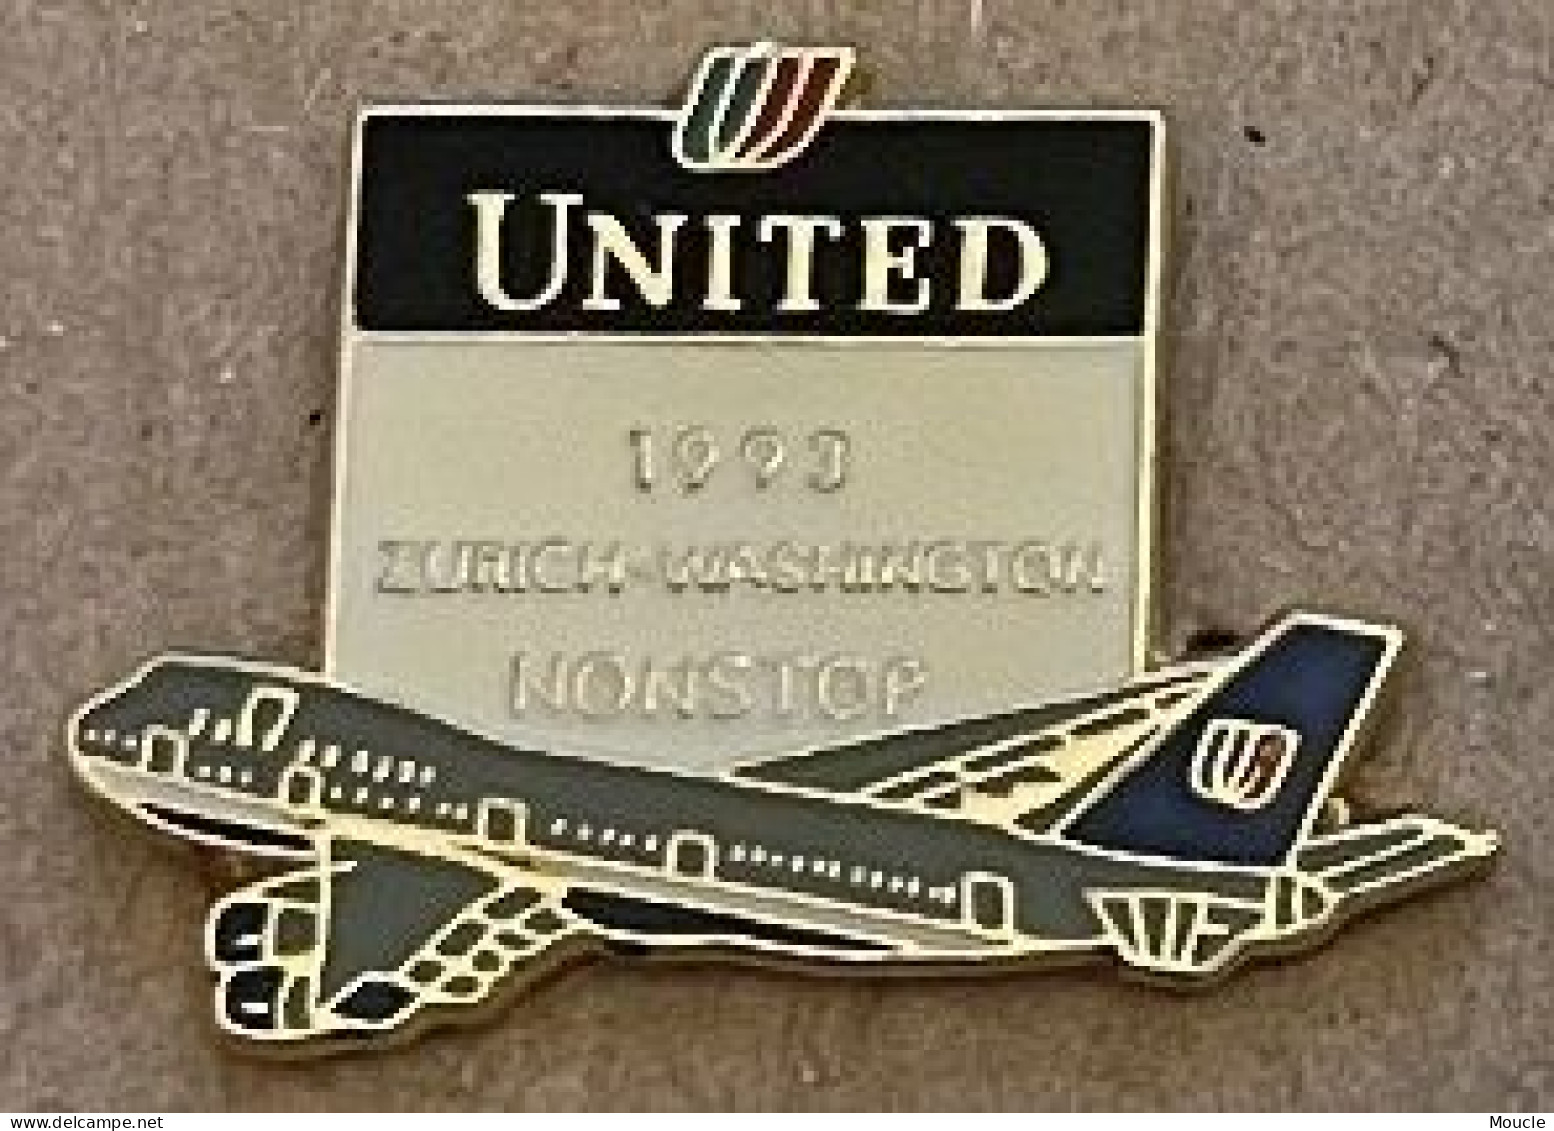 COMPAGNIE AERIENNE UNITED - 1993 ZÜRICH - WASHINGTON NON STOP - PLANE - SUISSE - USA - ETATS UNIS D'AMERIQUE -  (32) - Luftfahrt